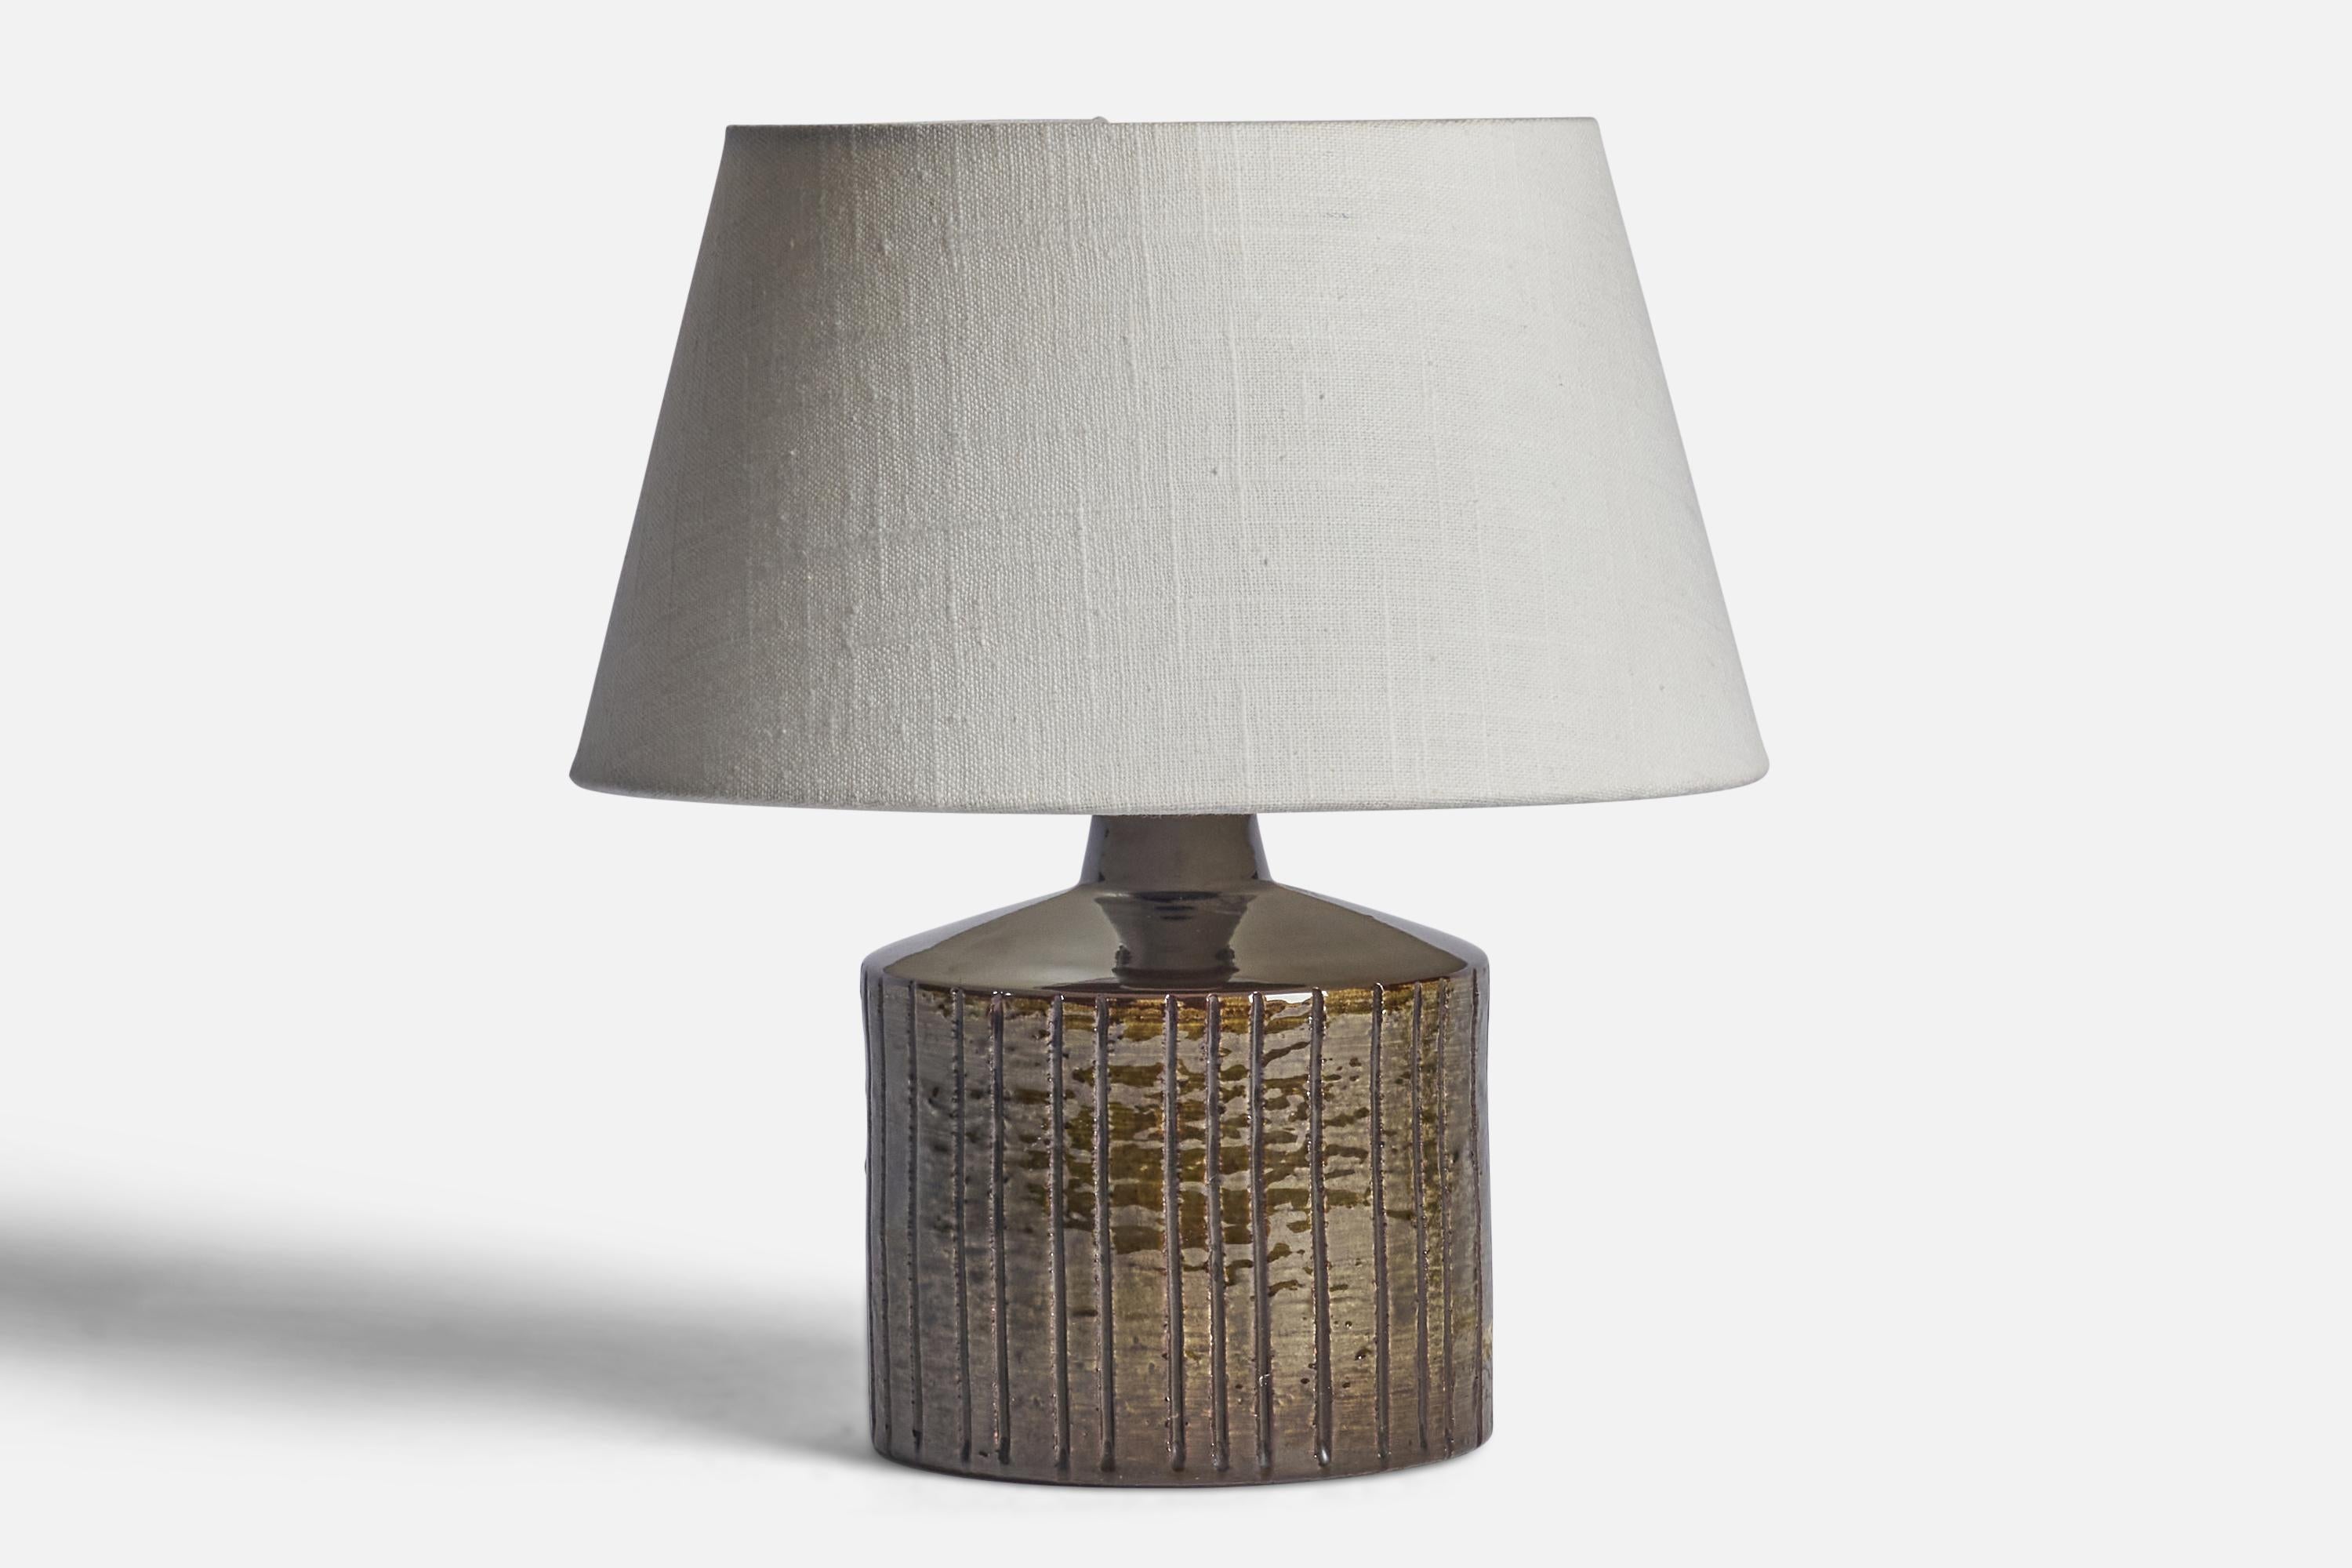 Tischlampe aus braun glasiertem Steingut, entworfen und hergestellt in Schweden, 1950er Jahre.

Abmessungen der Lampe (Zoll): 8,15